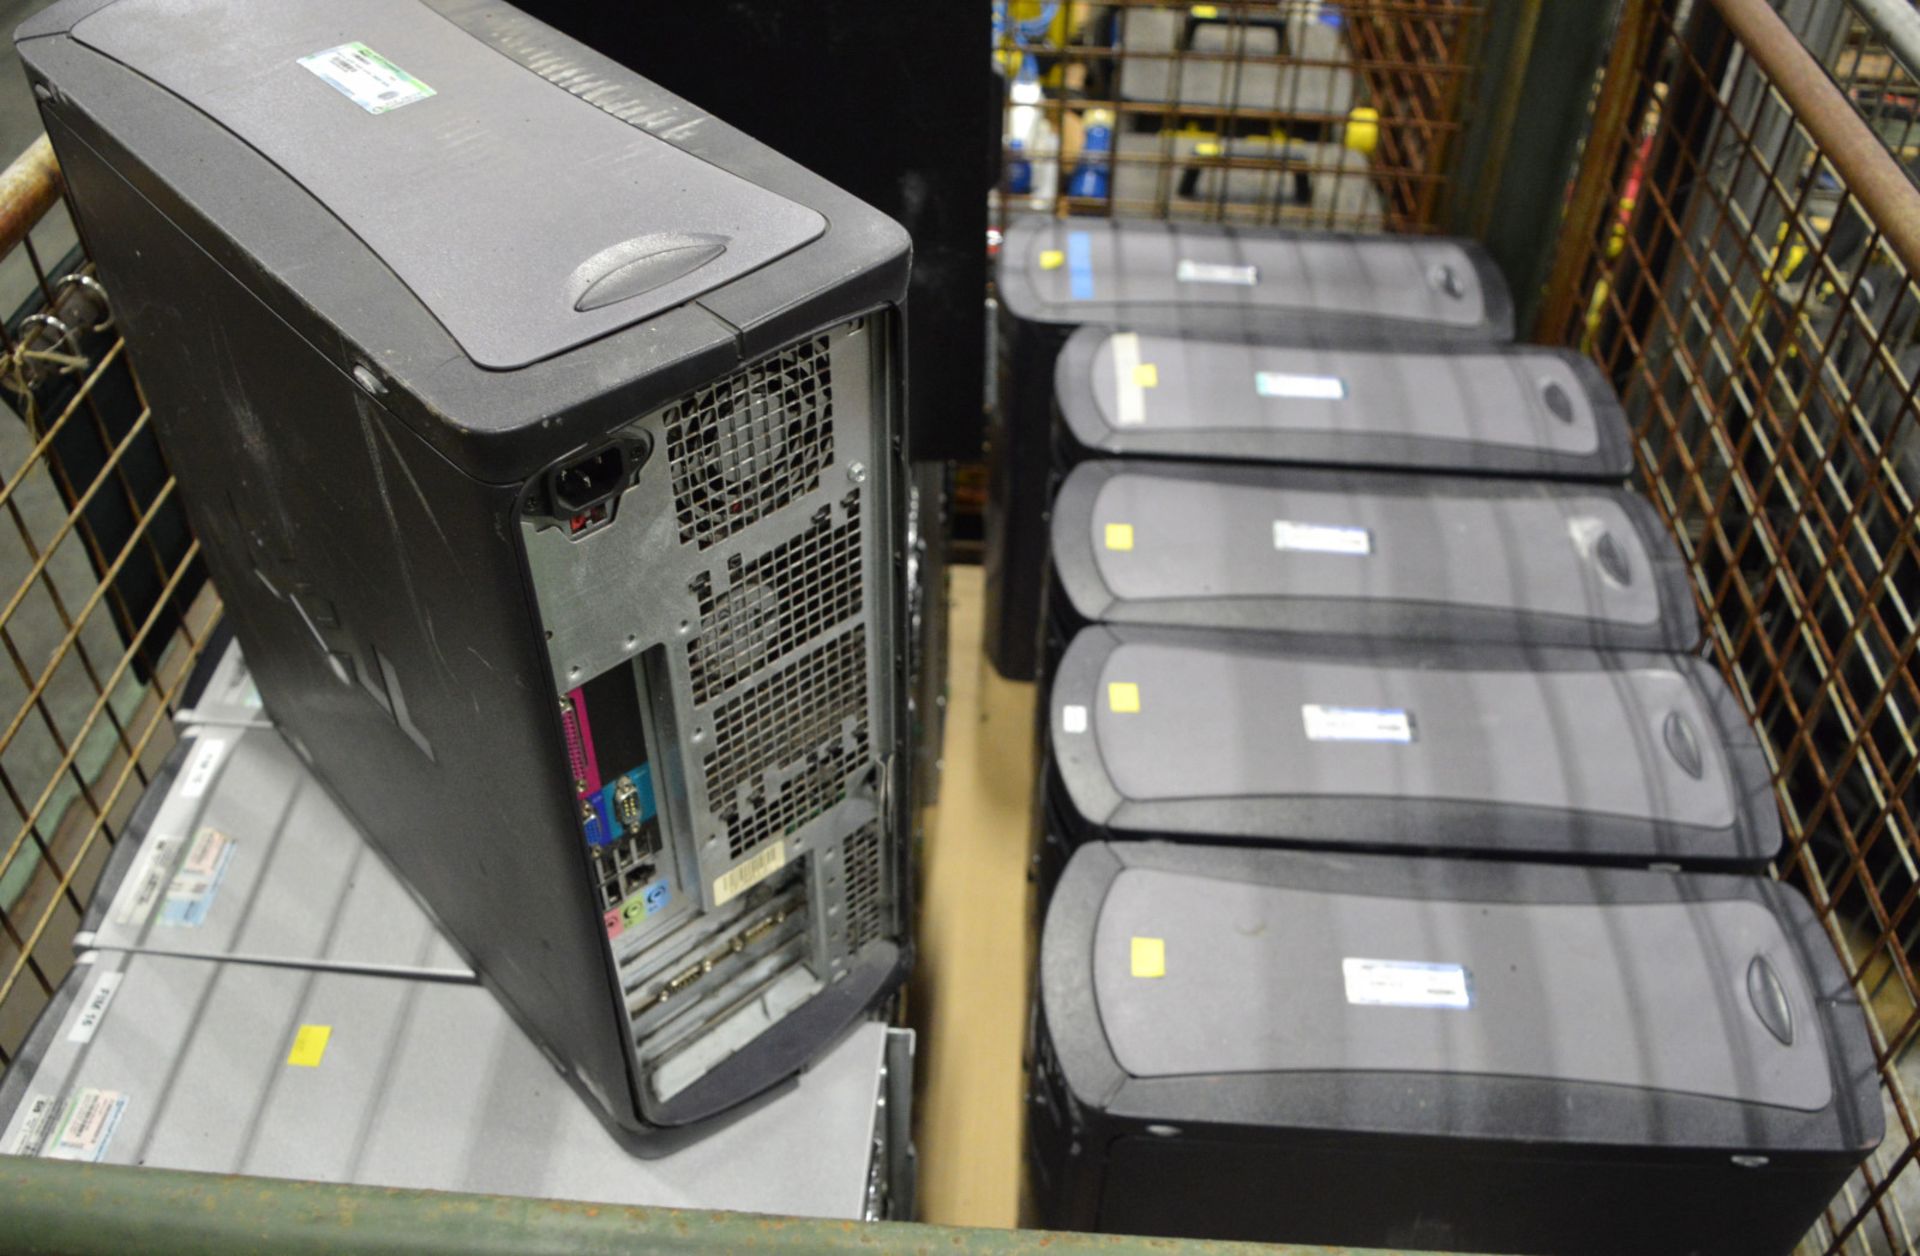 5x HP 4600 Workstations, 6x Dell Tower PCs, 1x HP Compaq 6005 Pro Microtower. - Bild 2 aus 2